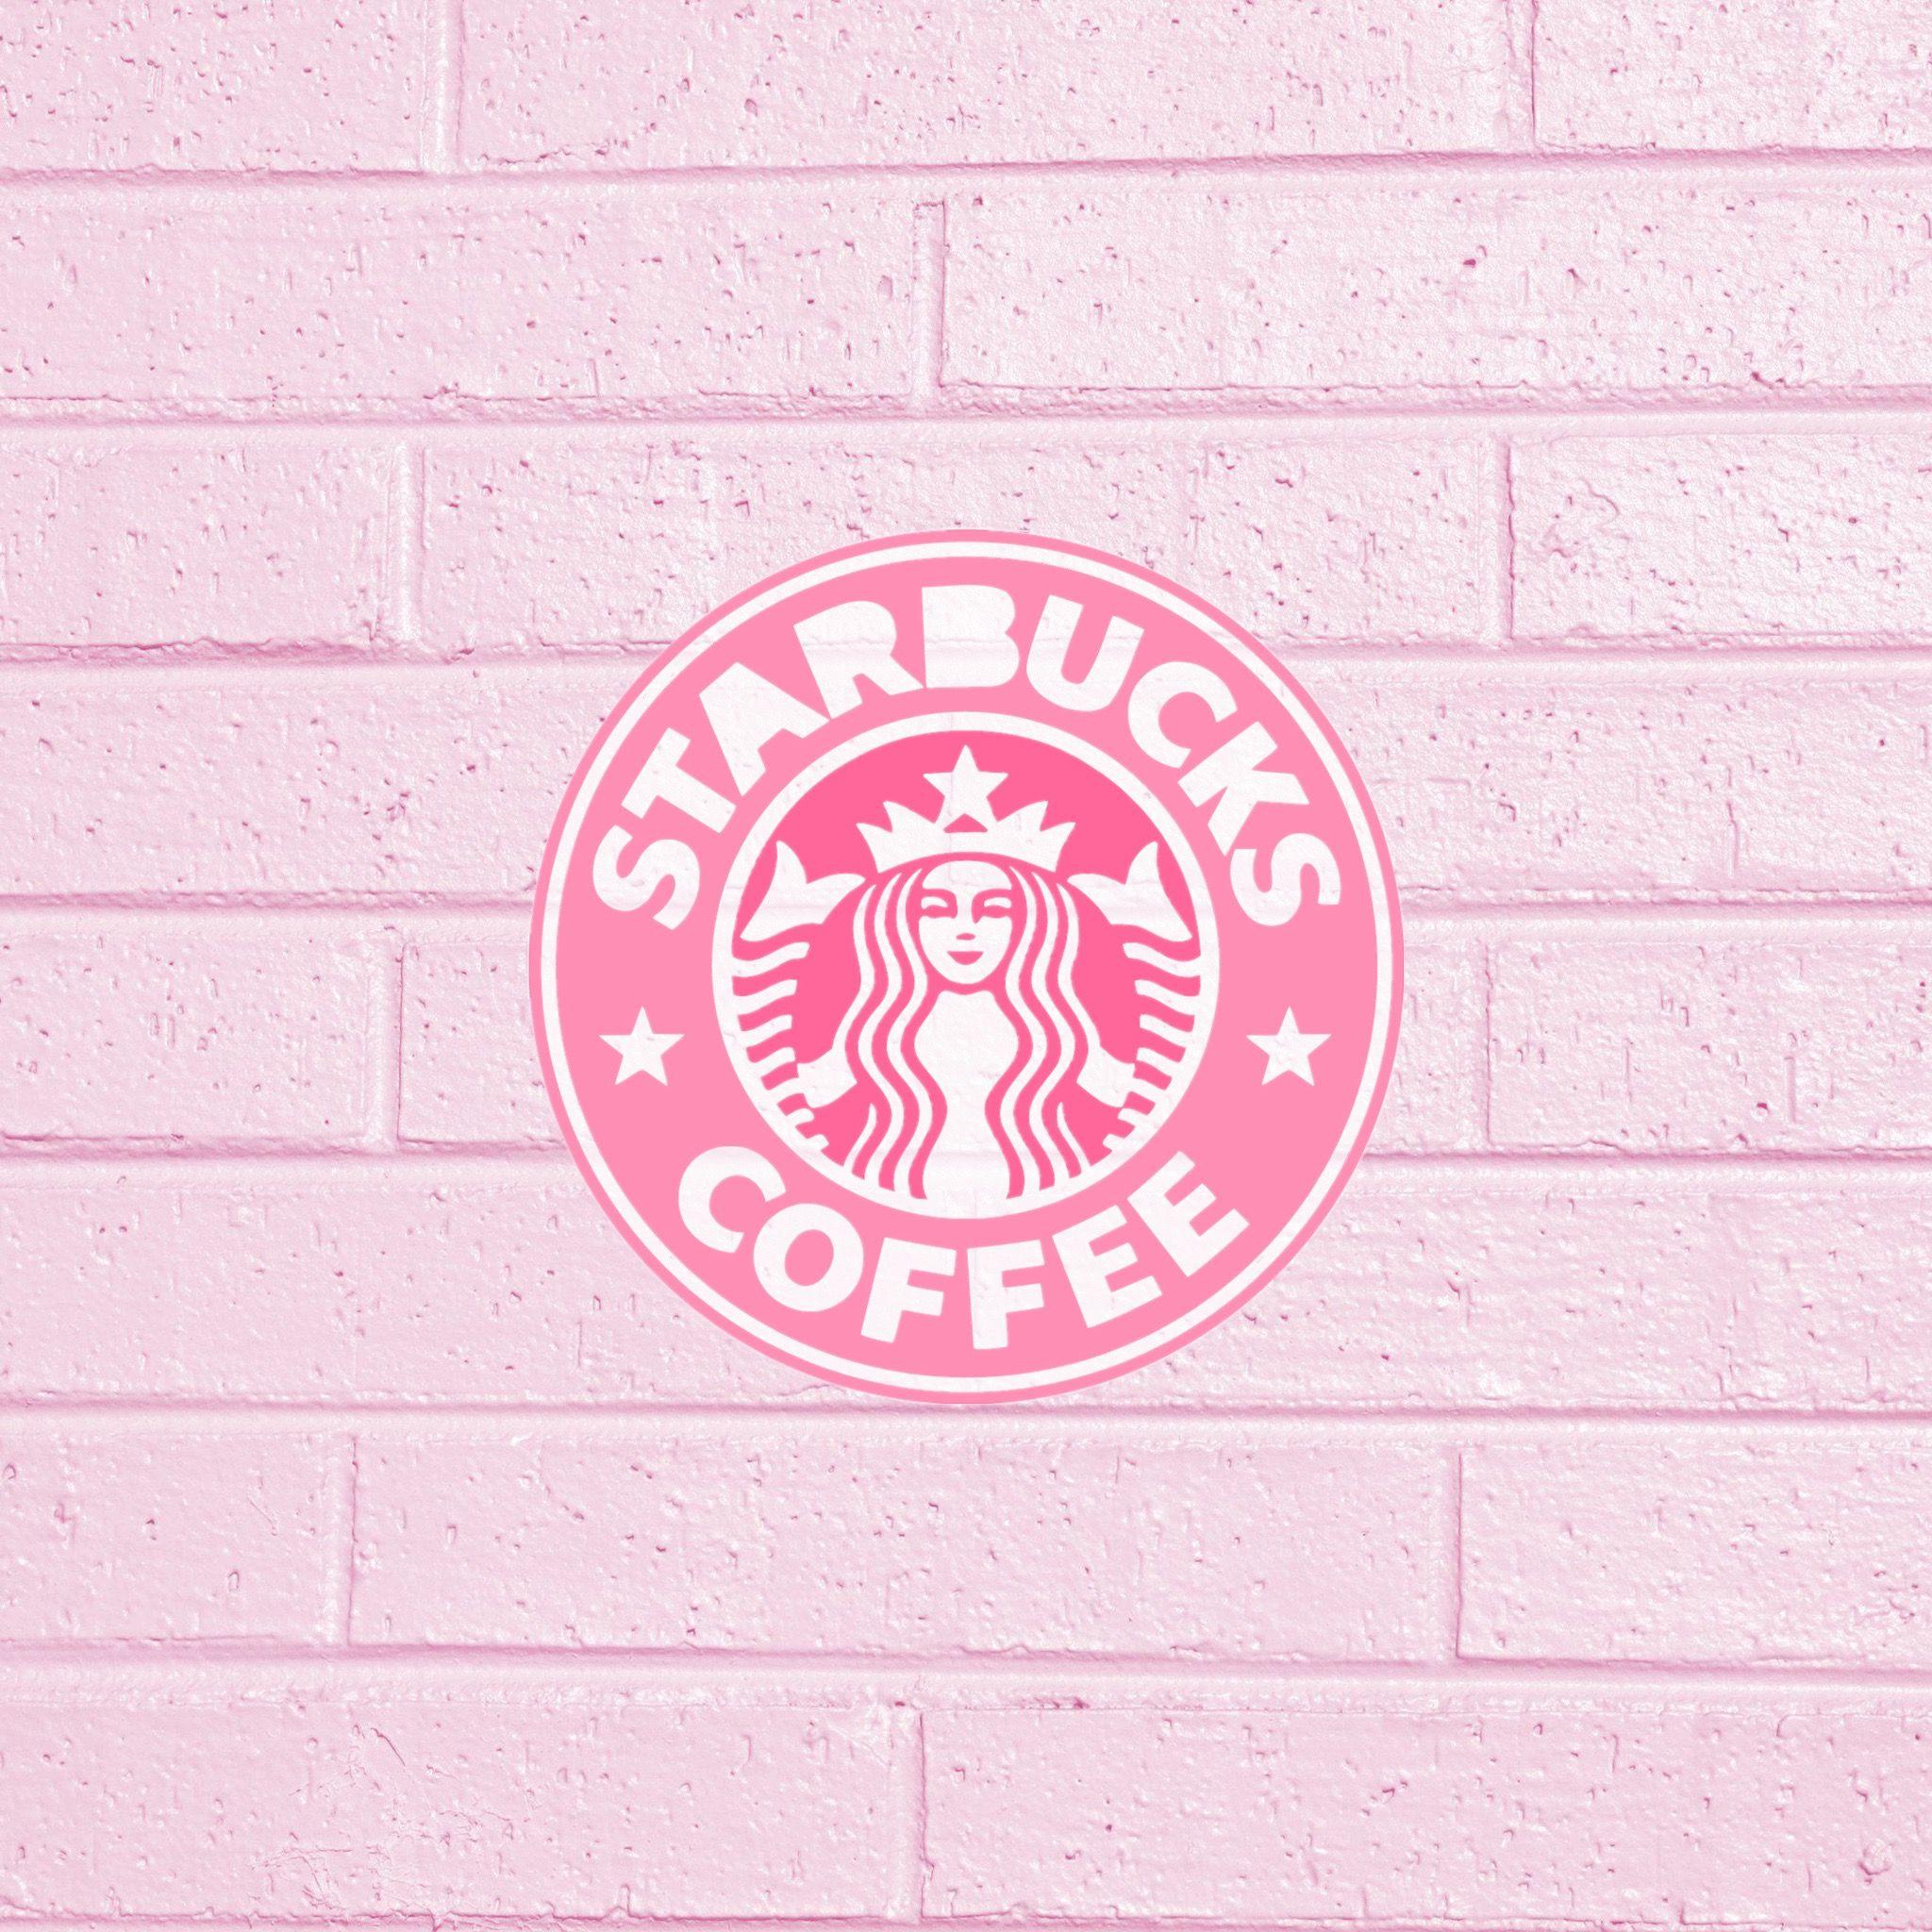 Rose Gold Background Starbucks Wallpaper